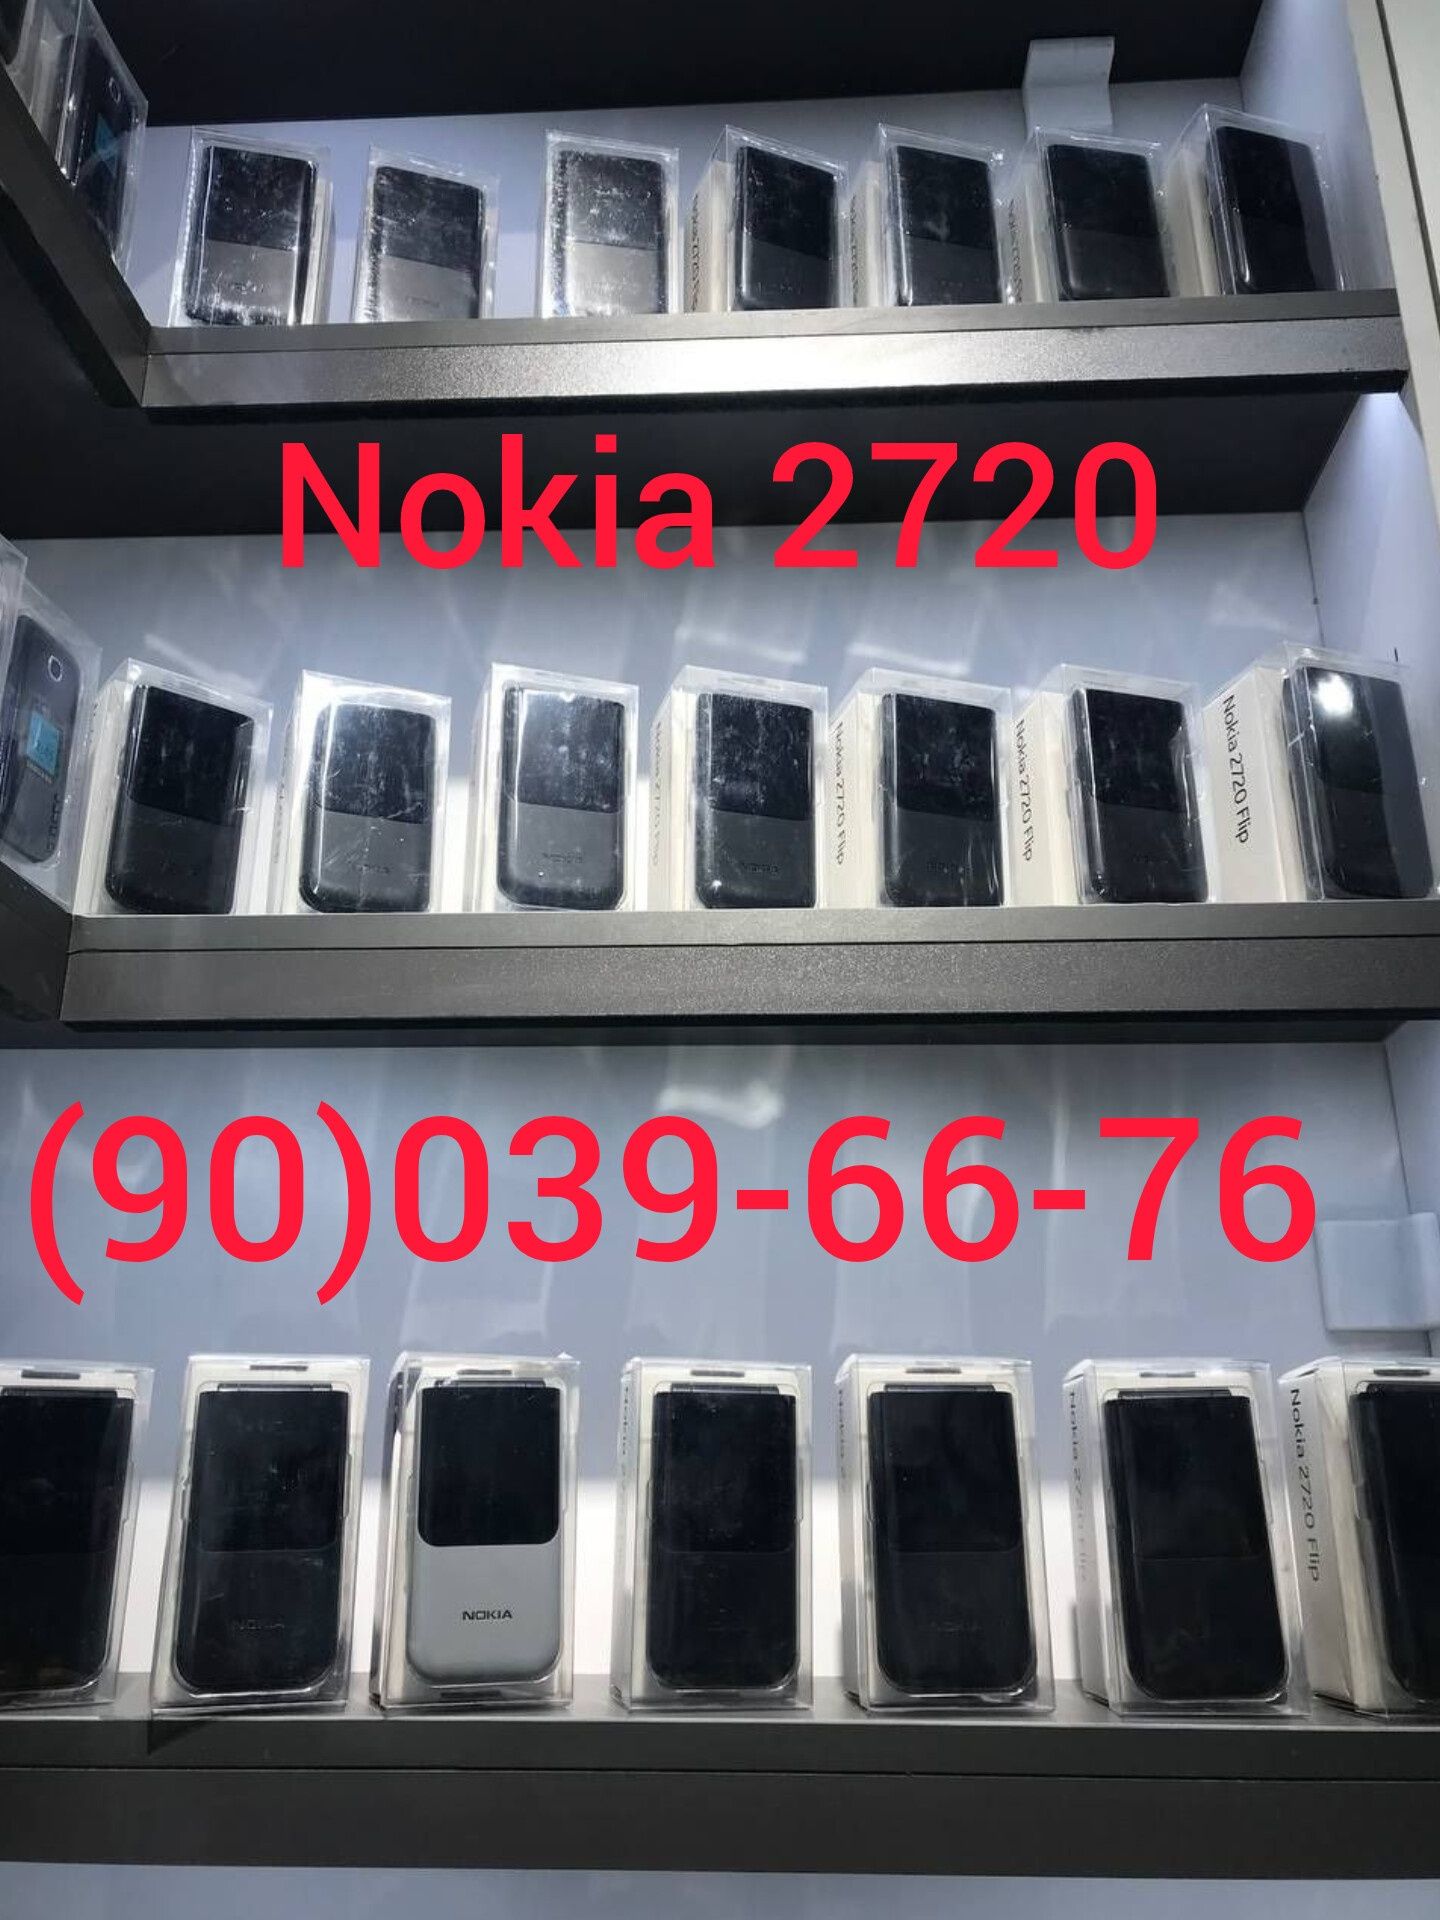 Samsung gusto 3 (B311V), Nokia 2720 flip, Nokia 2660 flip, YENGI, GSM.